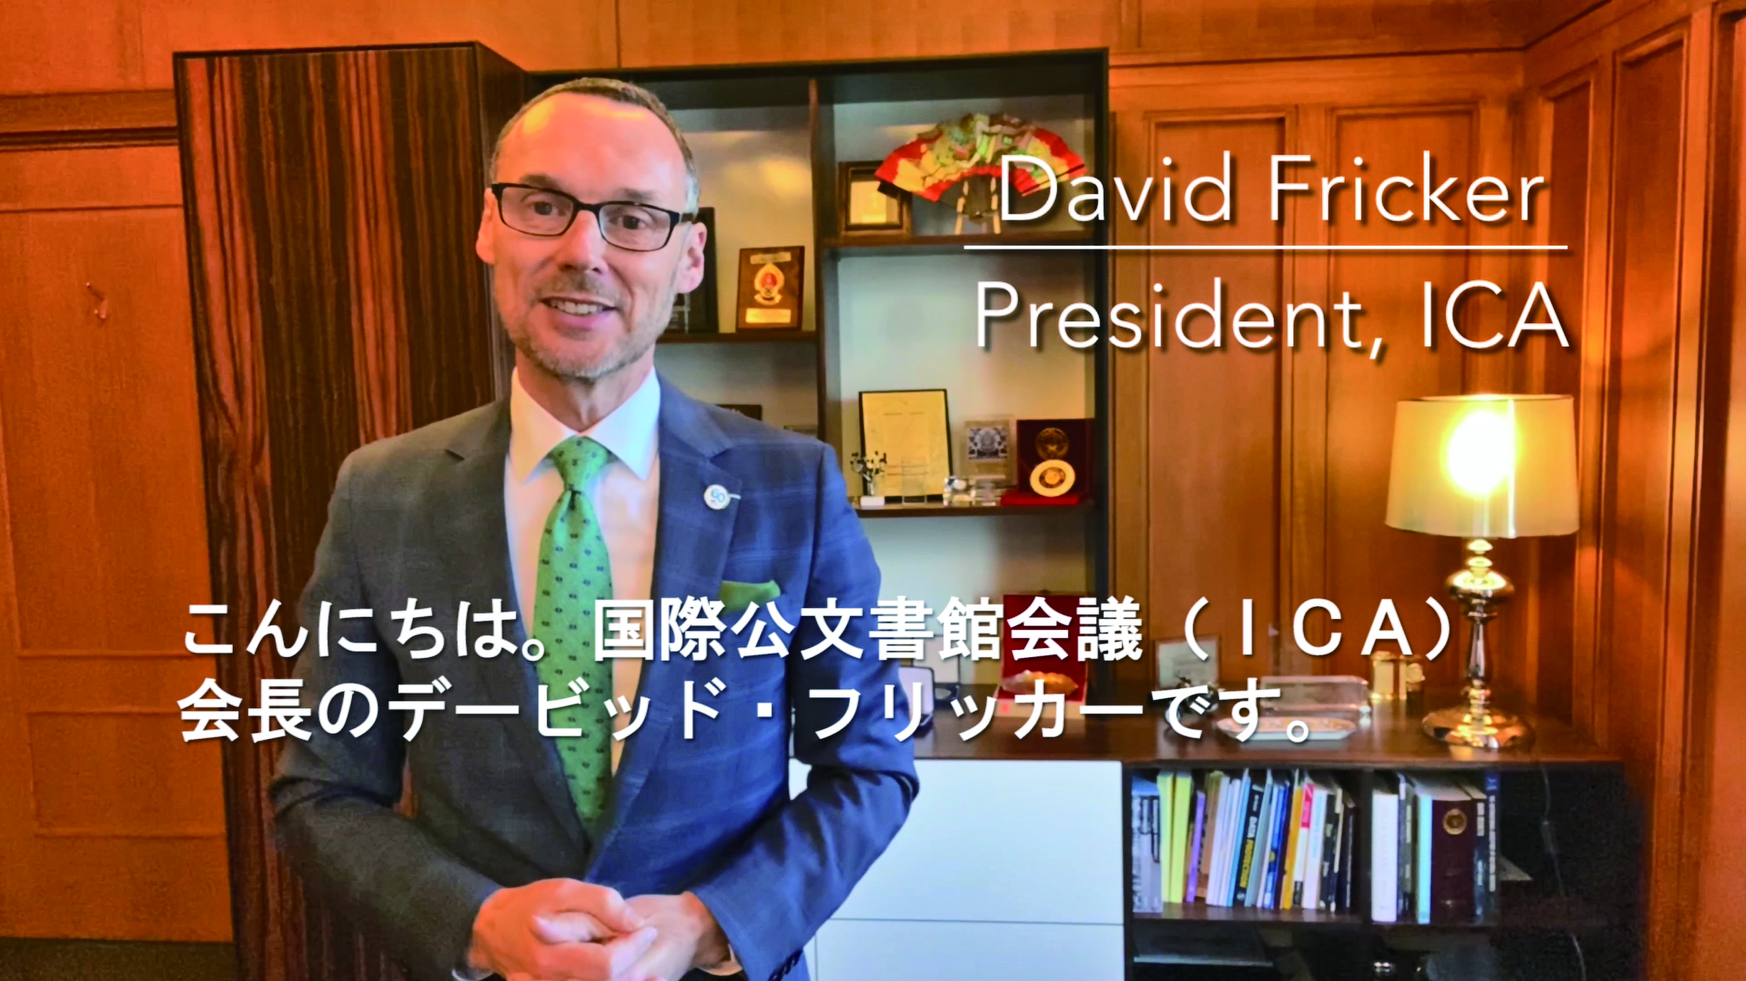 デービッド・フリッカー会長によるビデオレターでの祝辞の様子